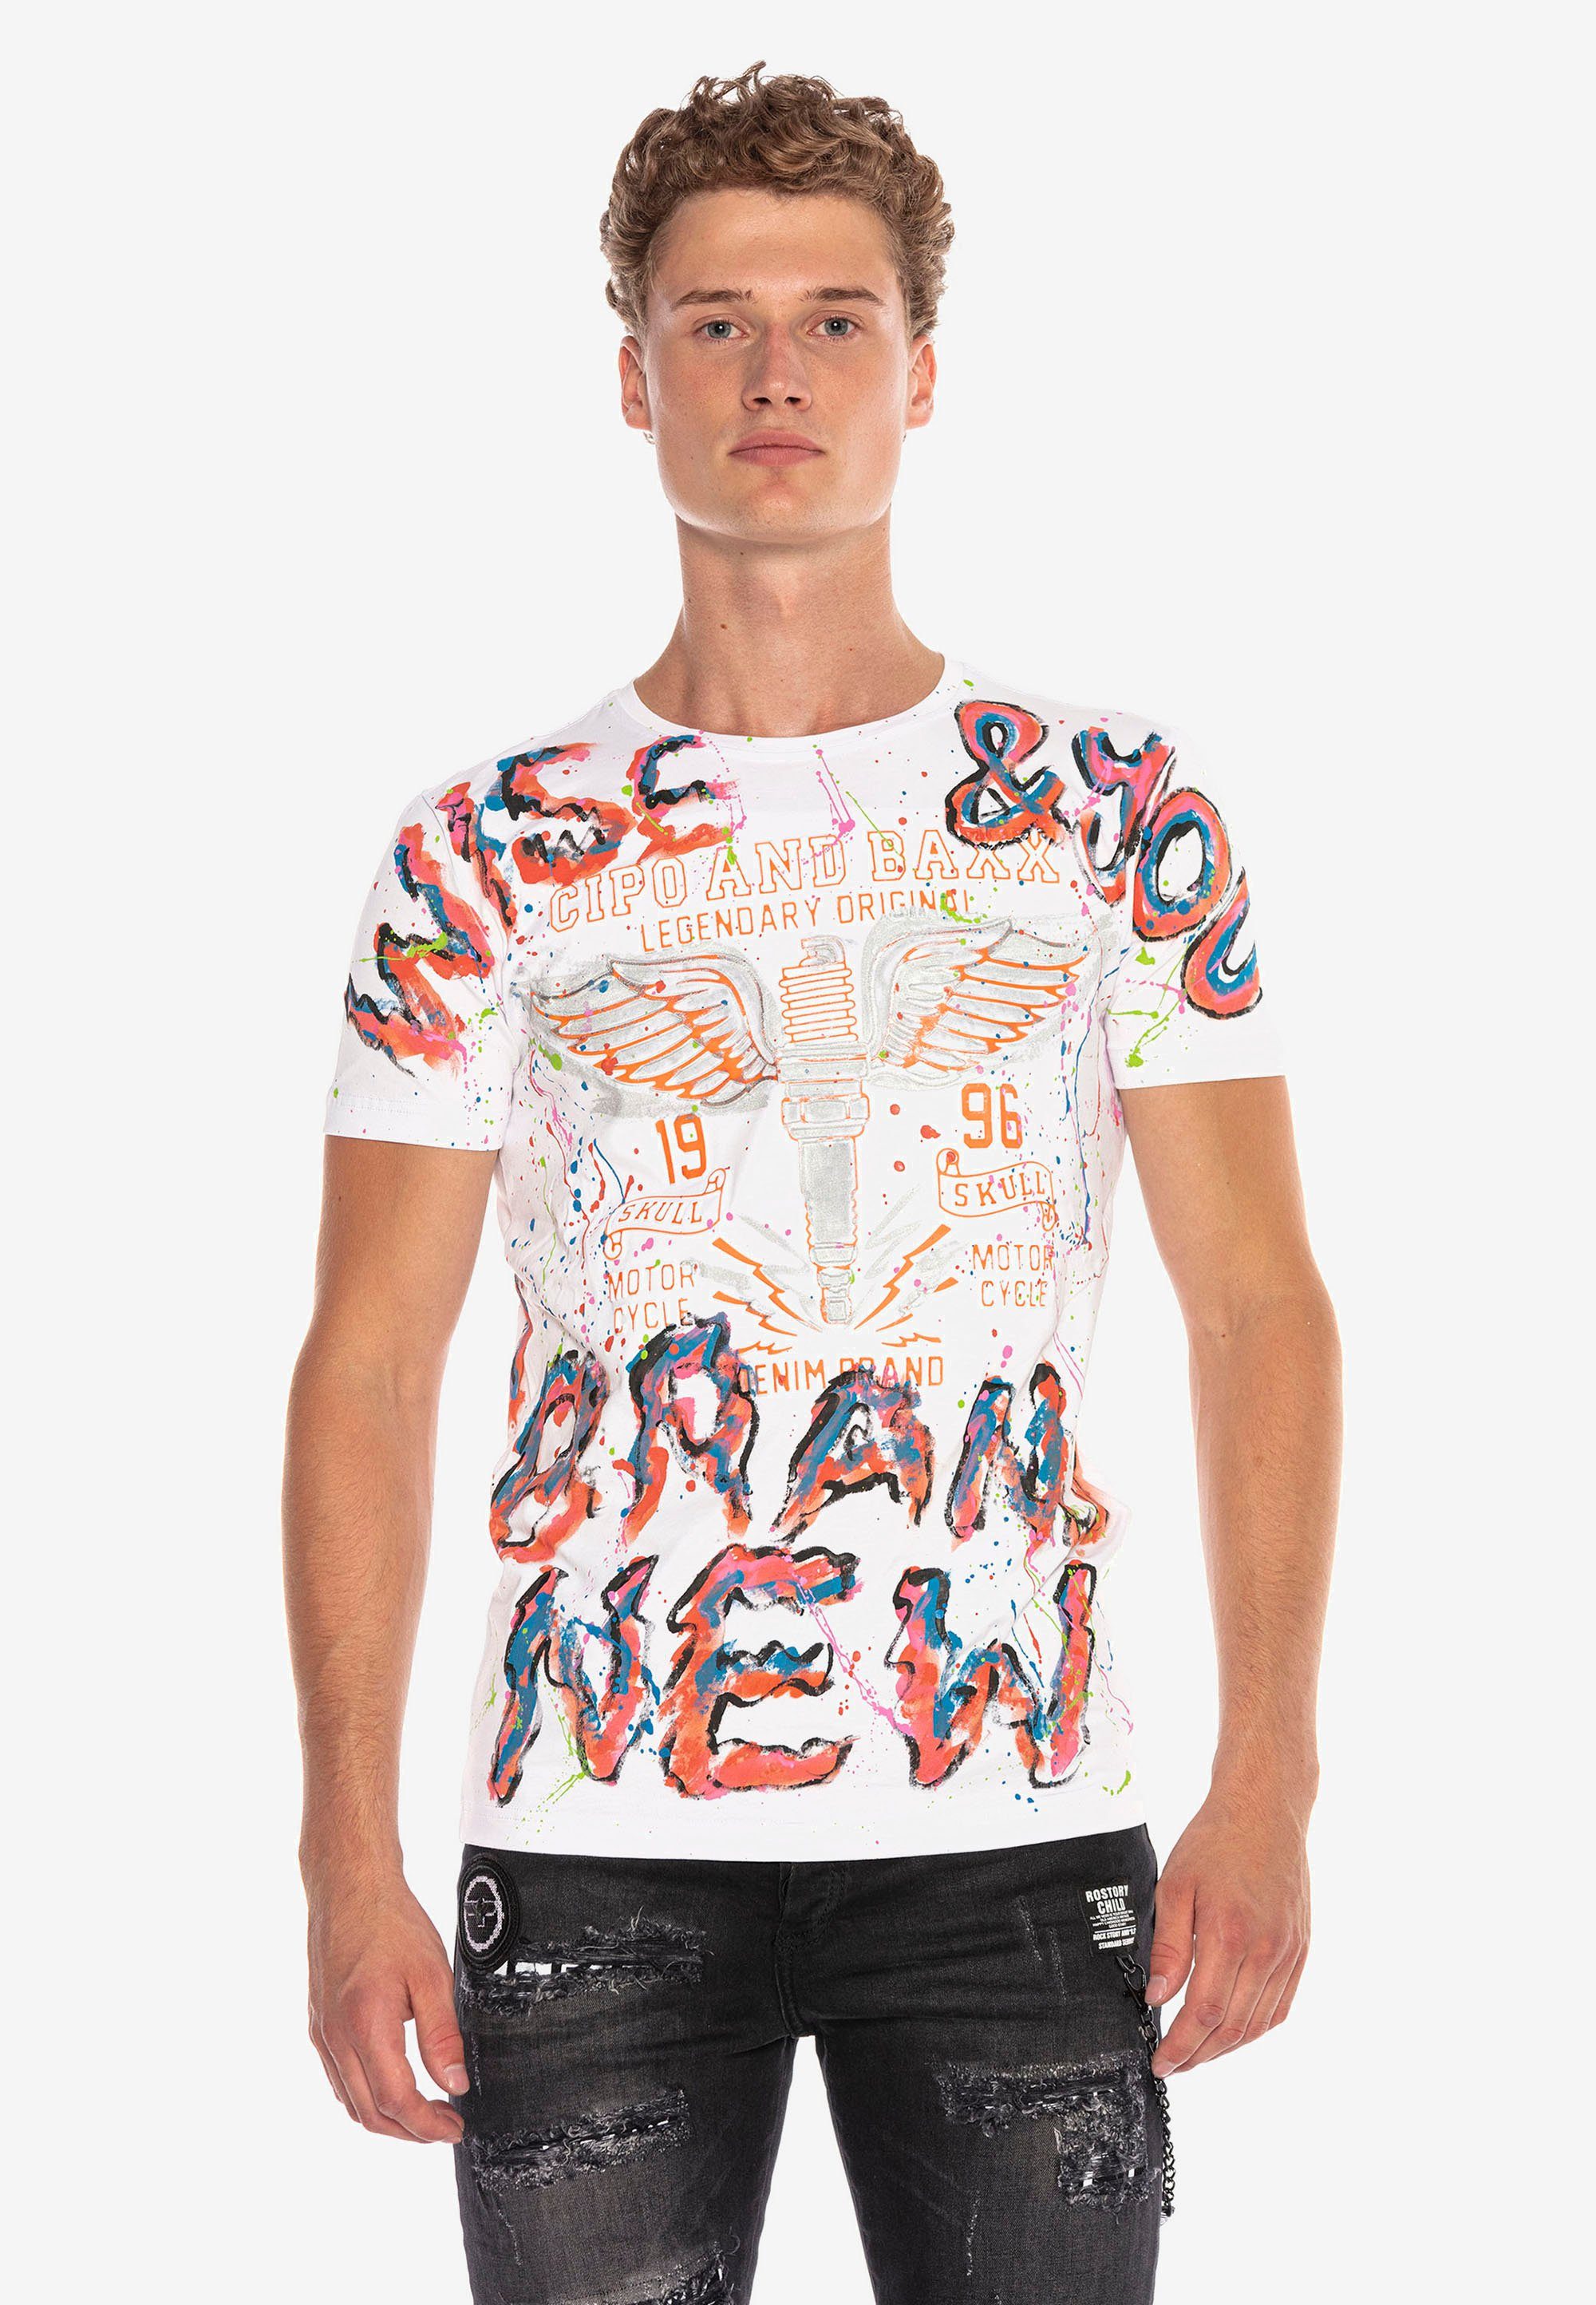 & trendigen Handpaint-Design Baxx Cipo im T-Shirt